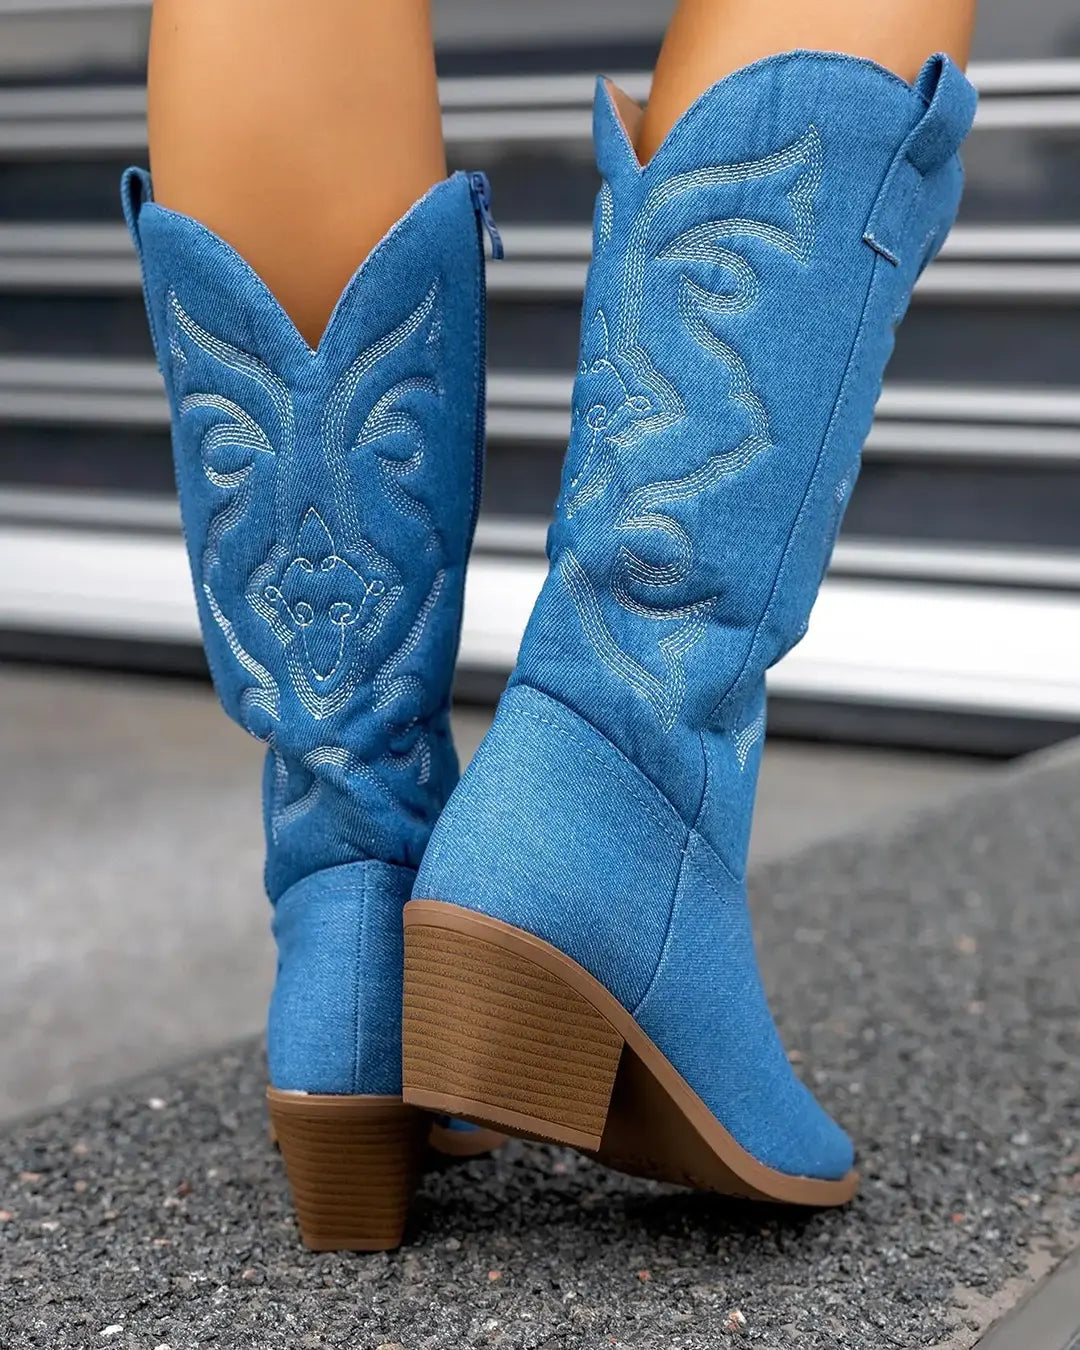 bota-western-texas-girl-jeans-cowboy-cano-alto-denim-uebecom-2